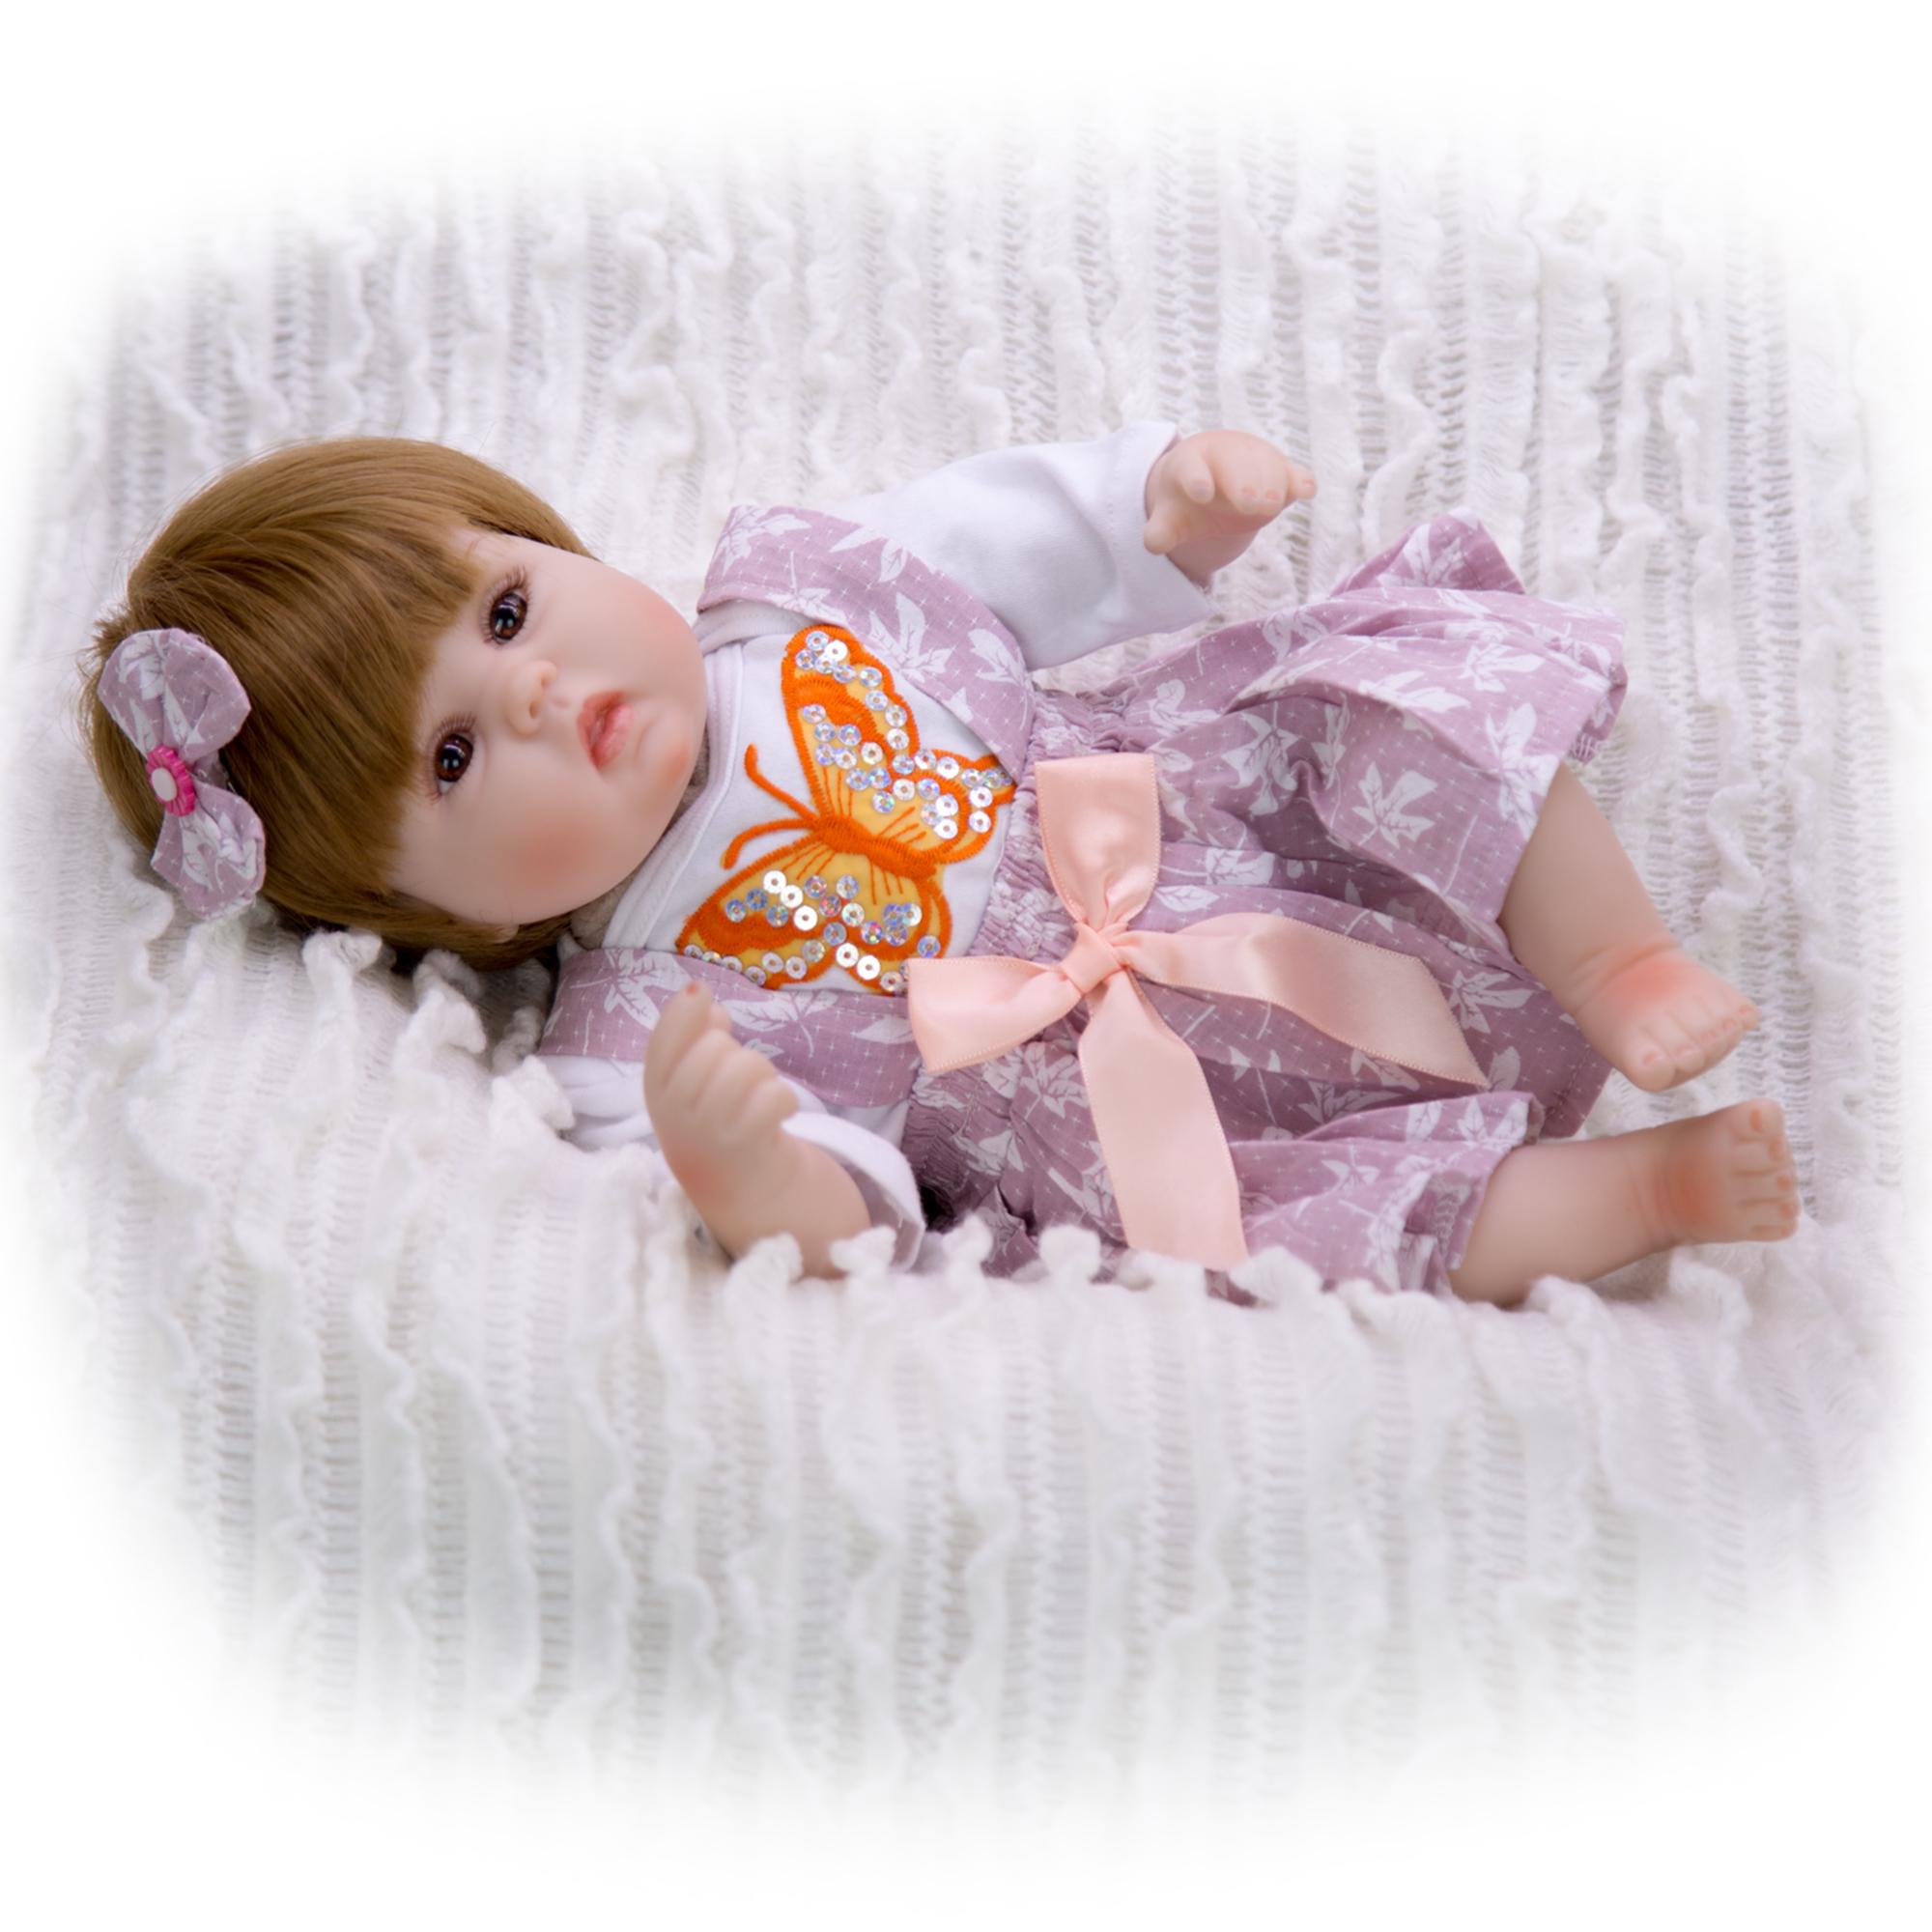 Изображение товара: KEIUMI Reborn Девочка Кукла 17 дюймов горячая Распродажа Reborn Menima тканевое тело Baby Reborn кукла для детей подарок на день ребенка